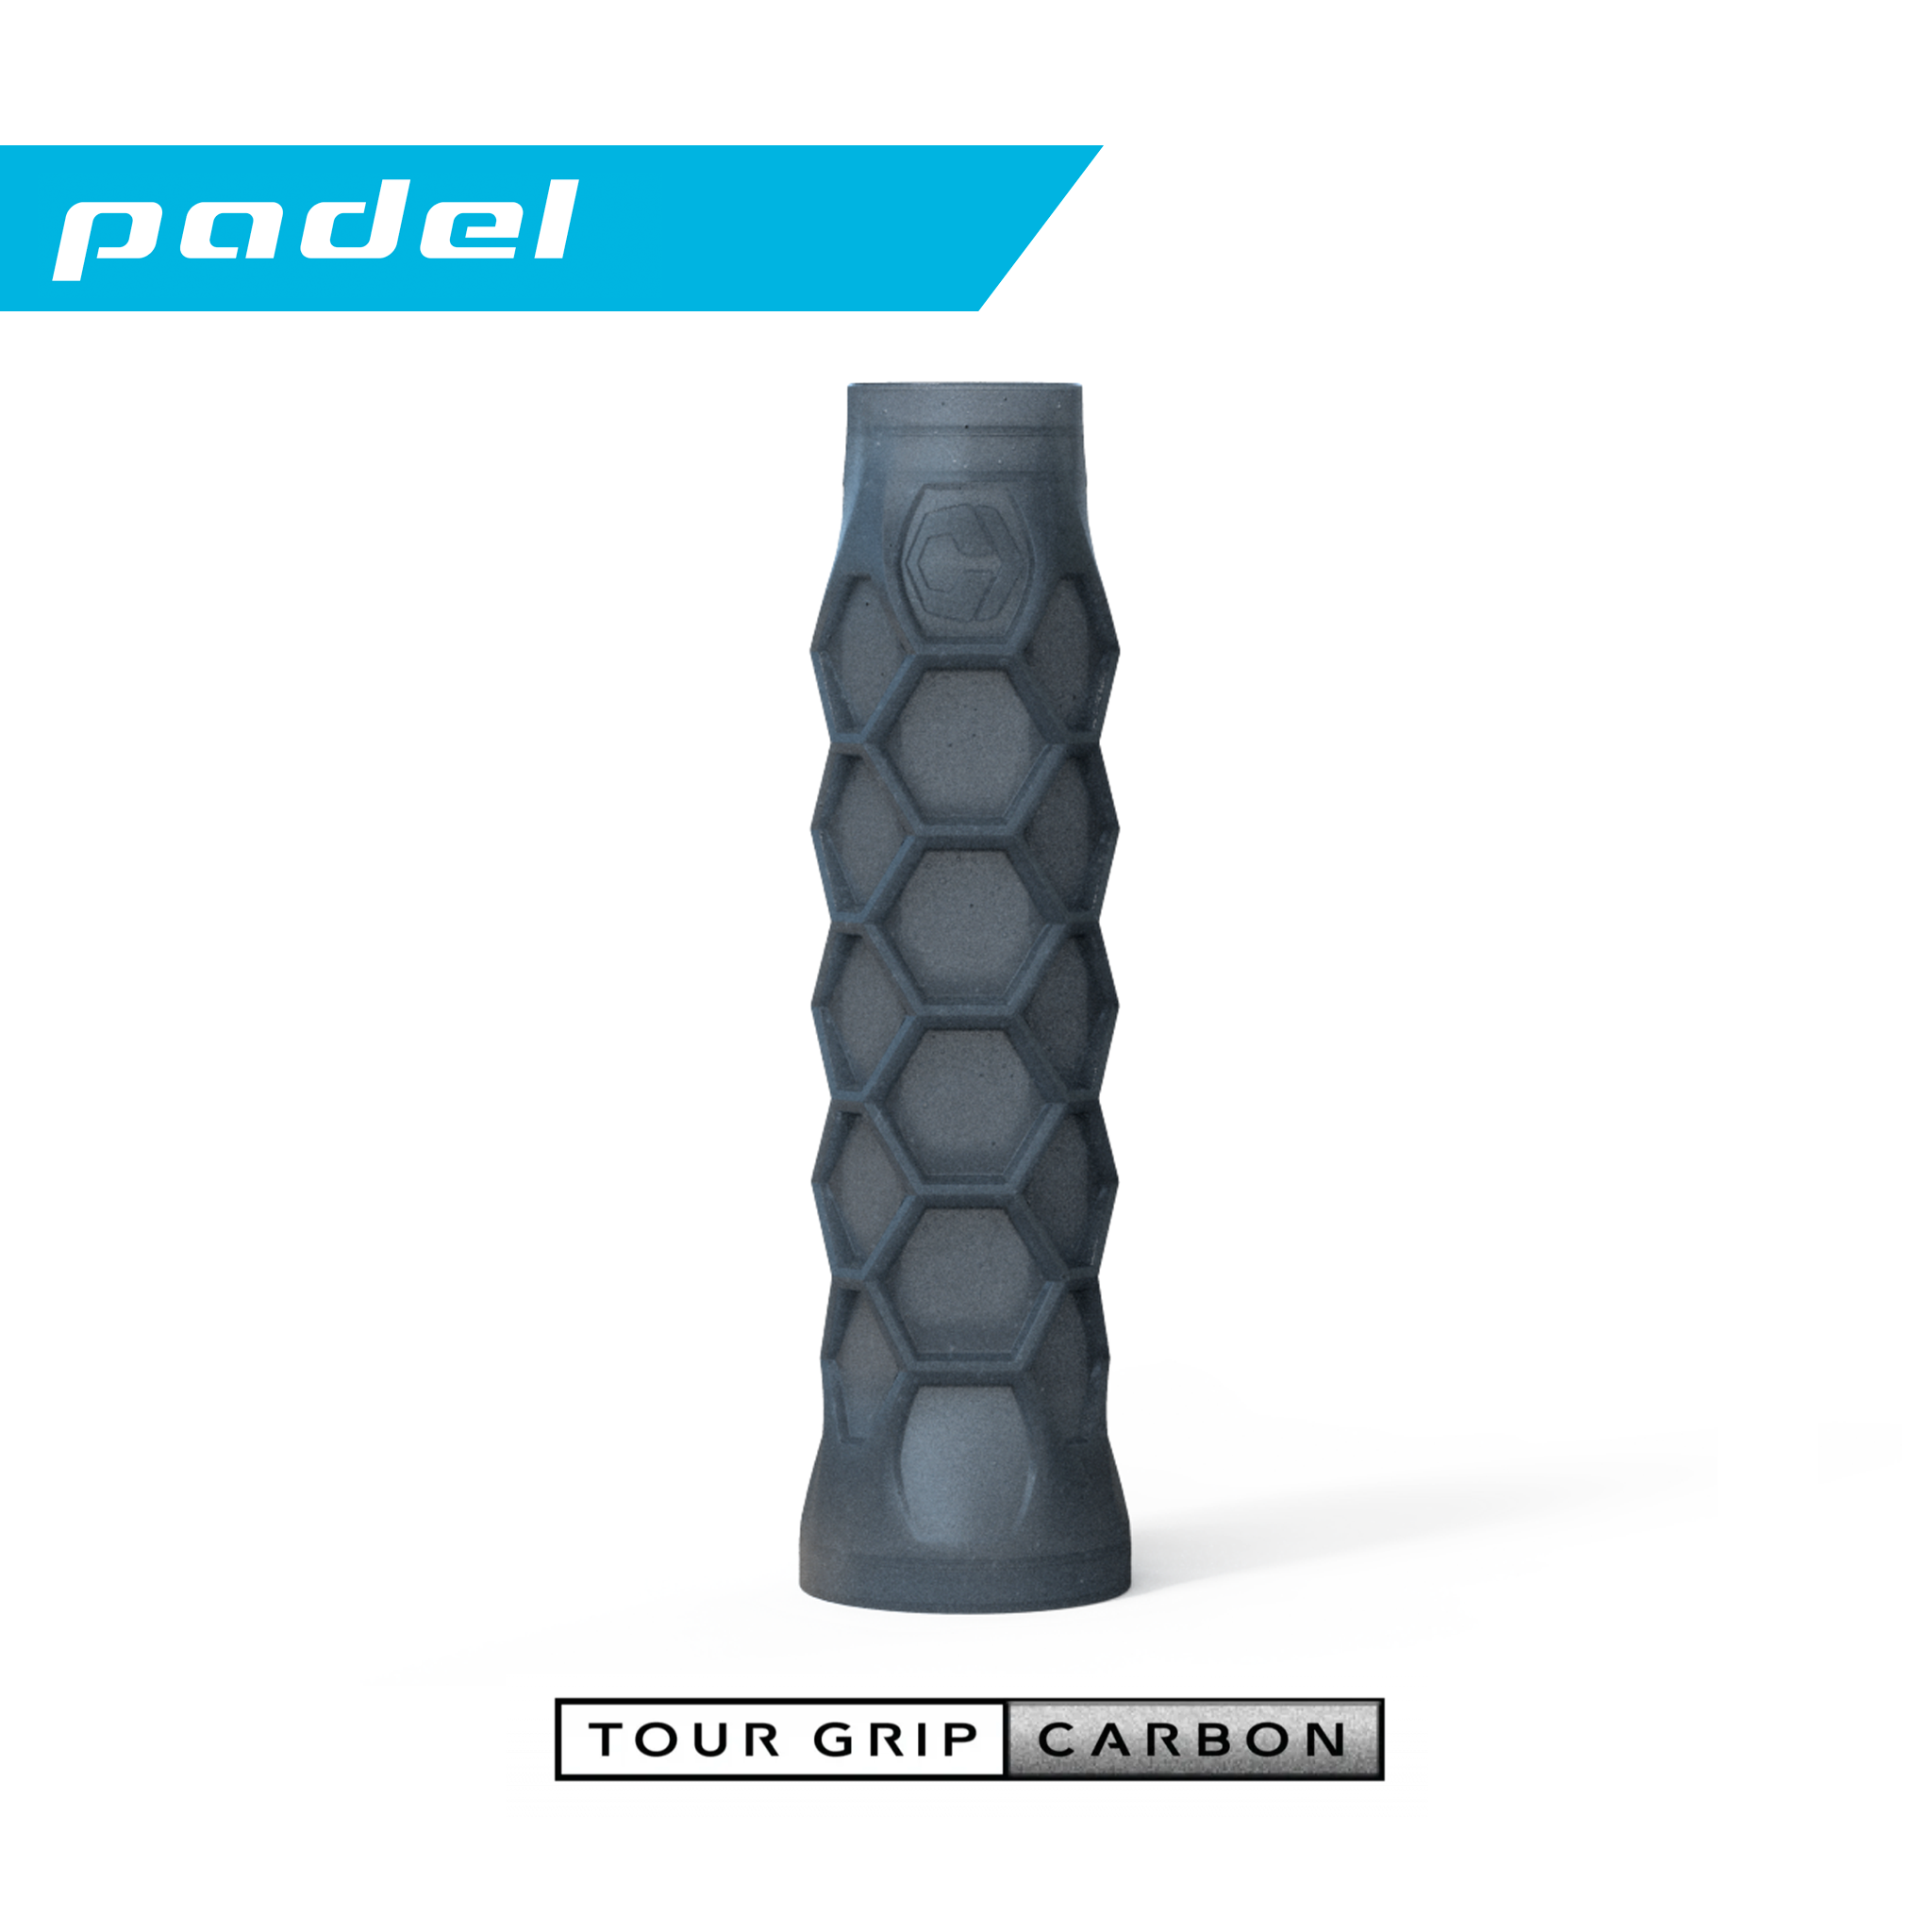 Padel Hesacore Tour Grip Carbon